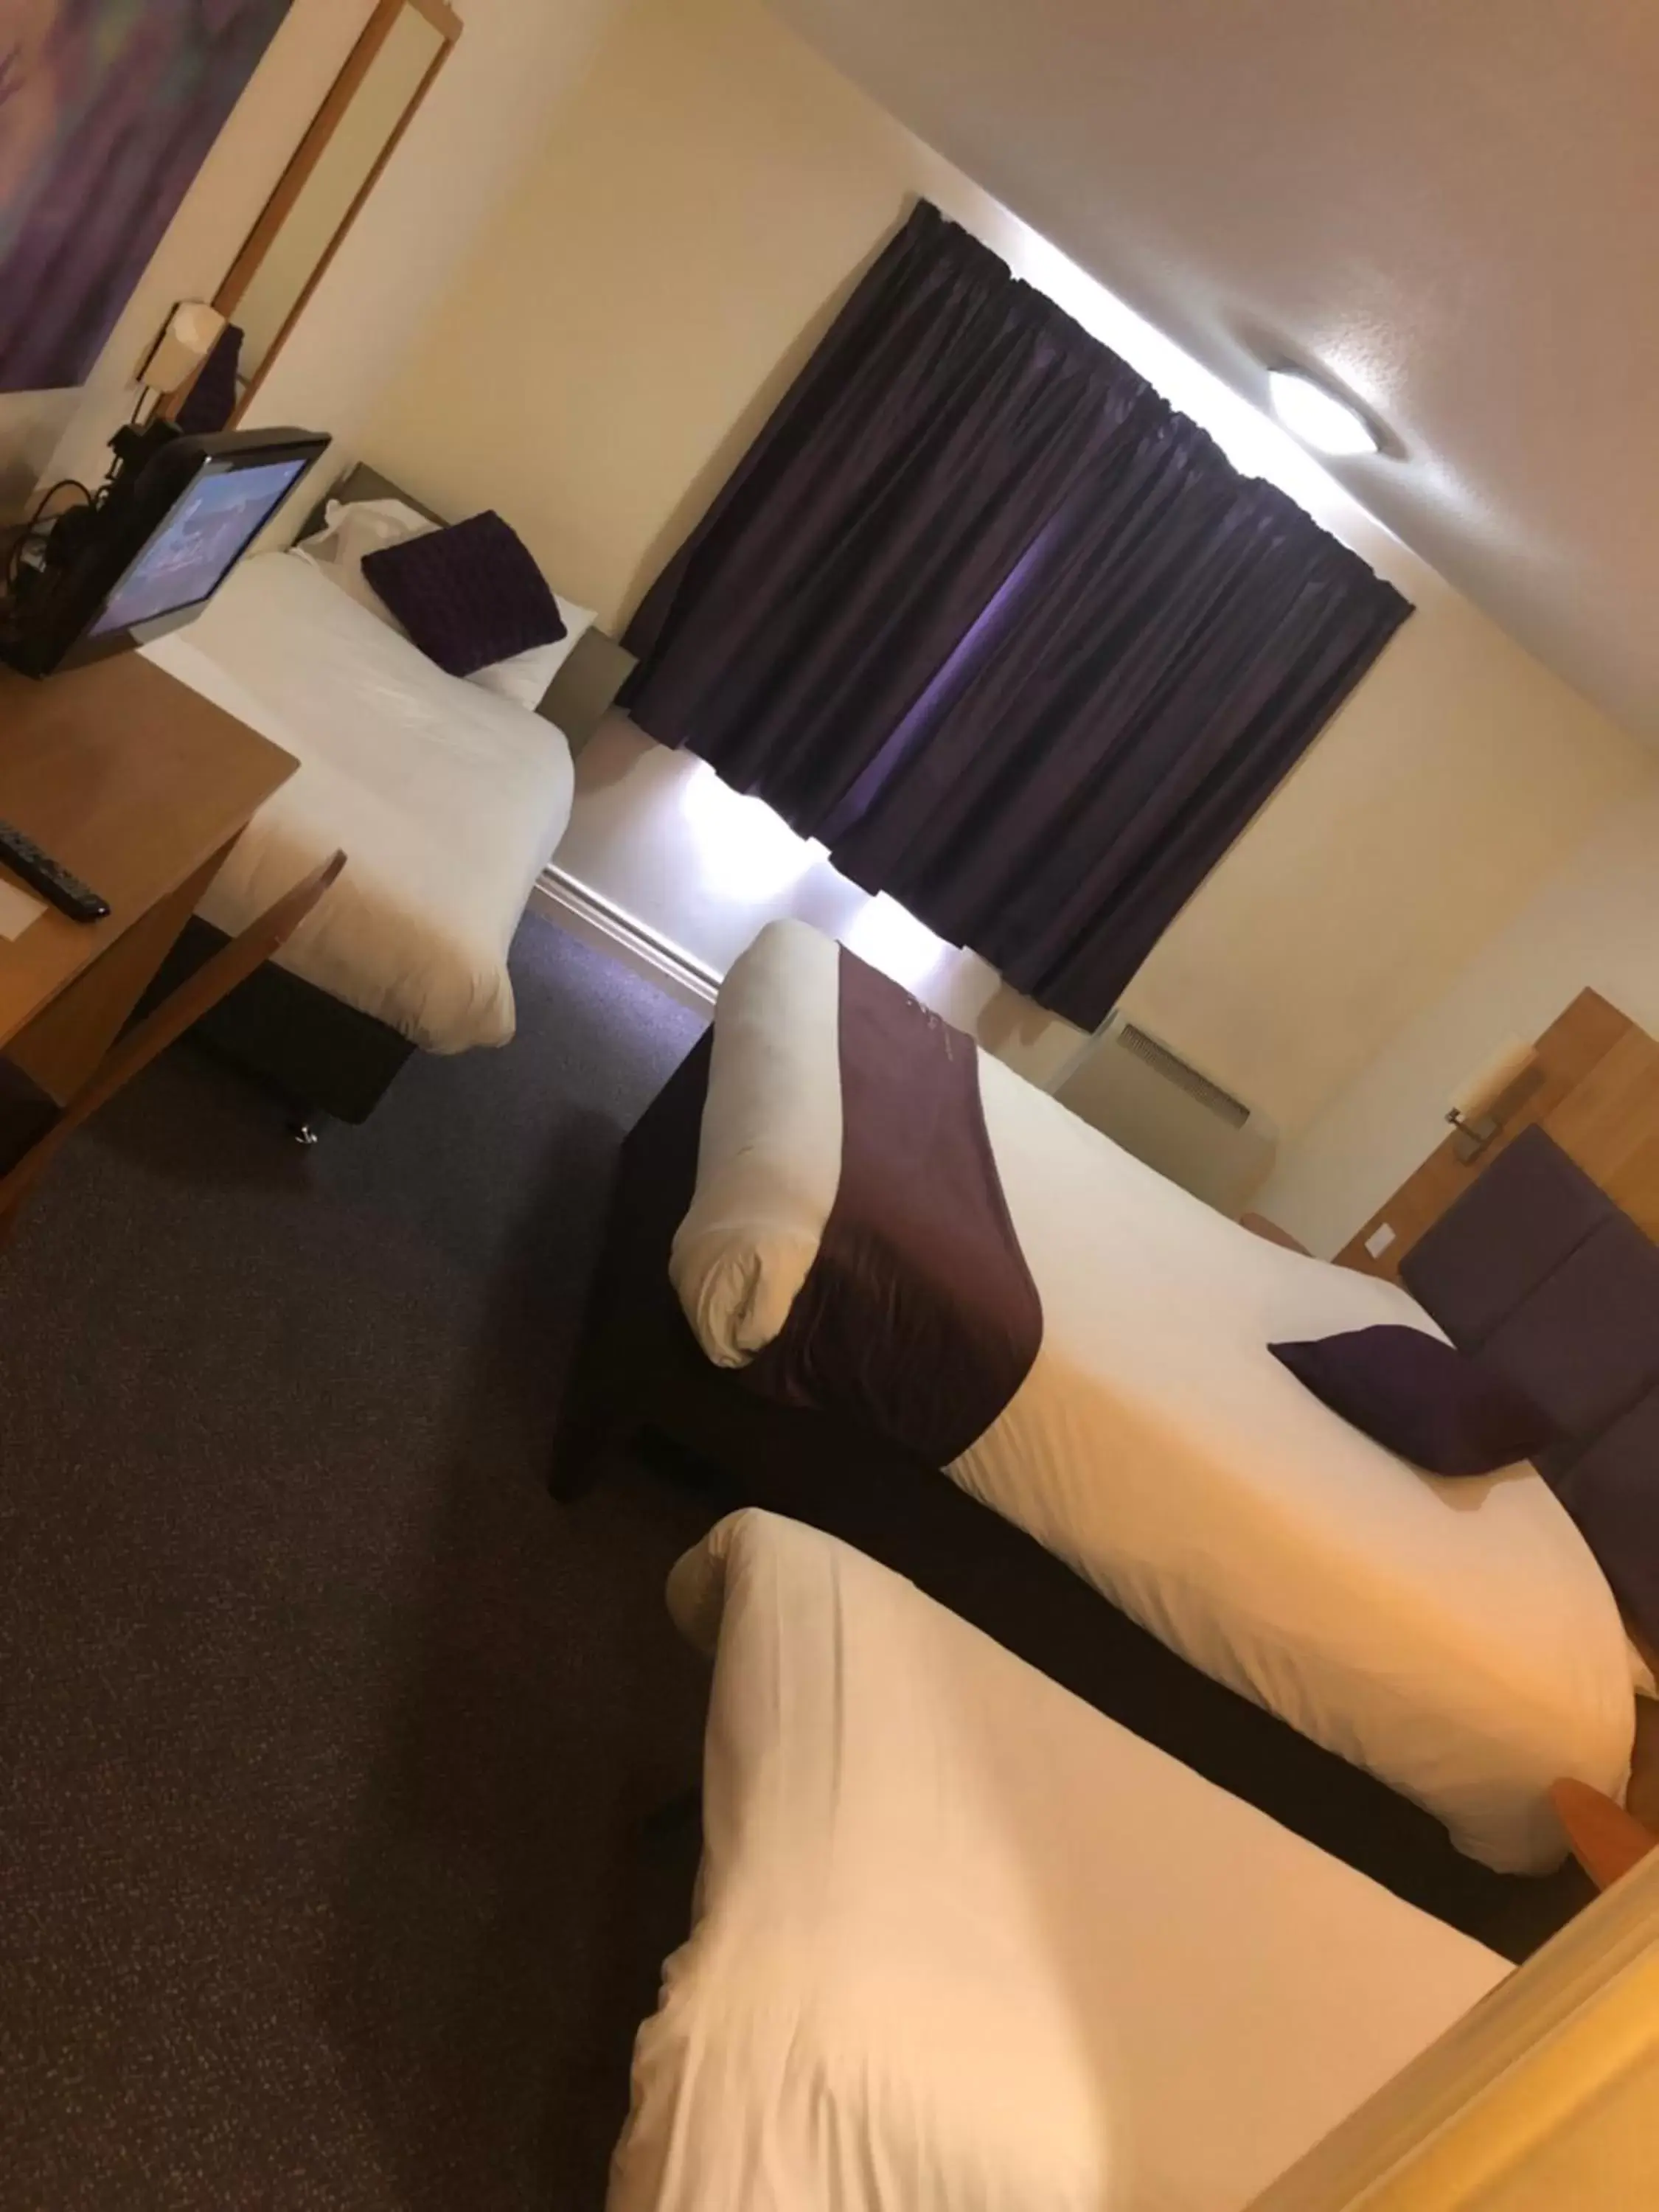 Bed in Purple Roomz Preston South